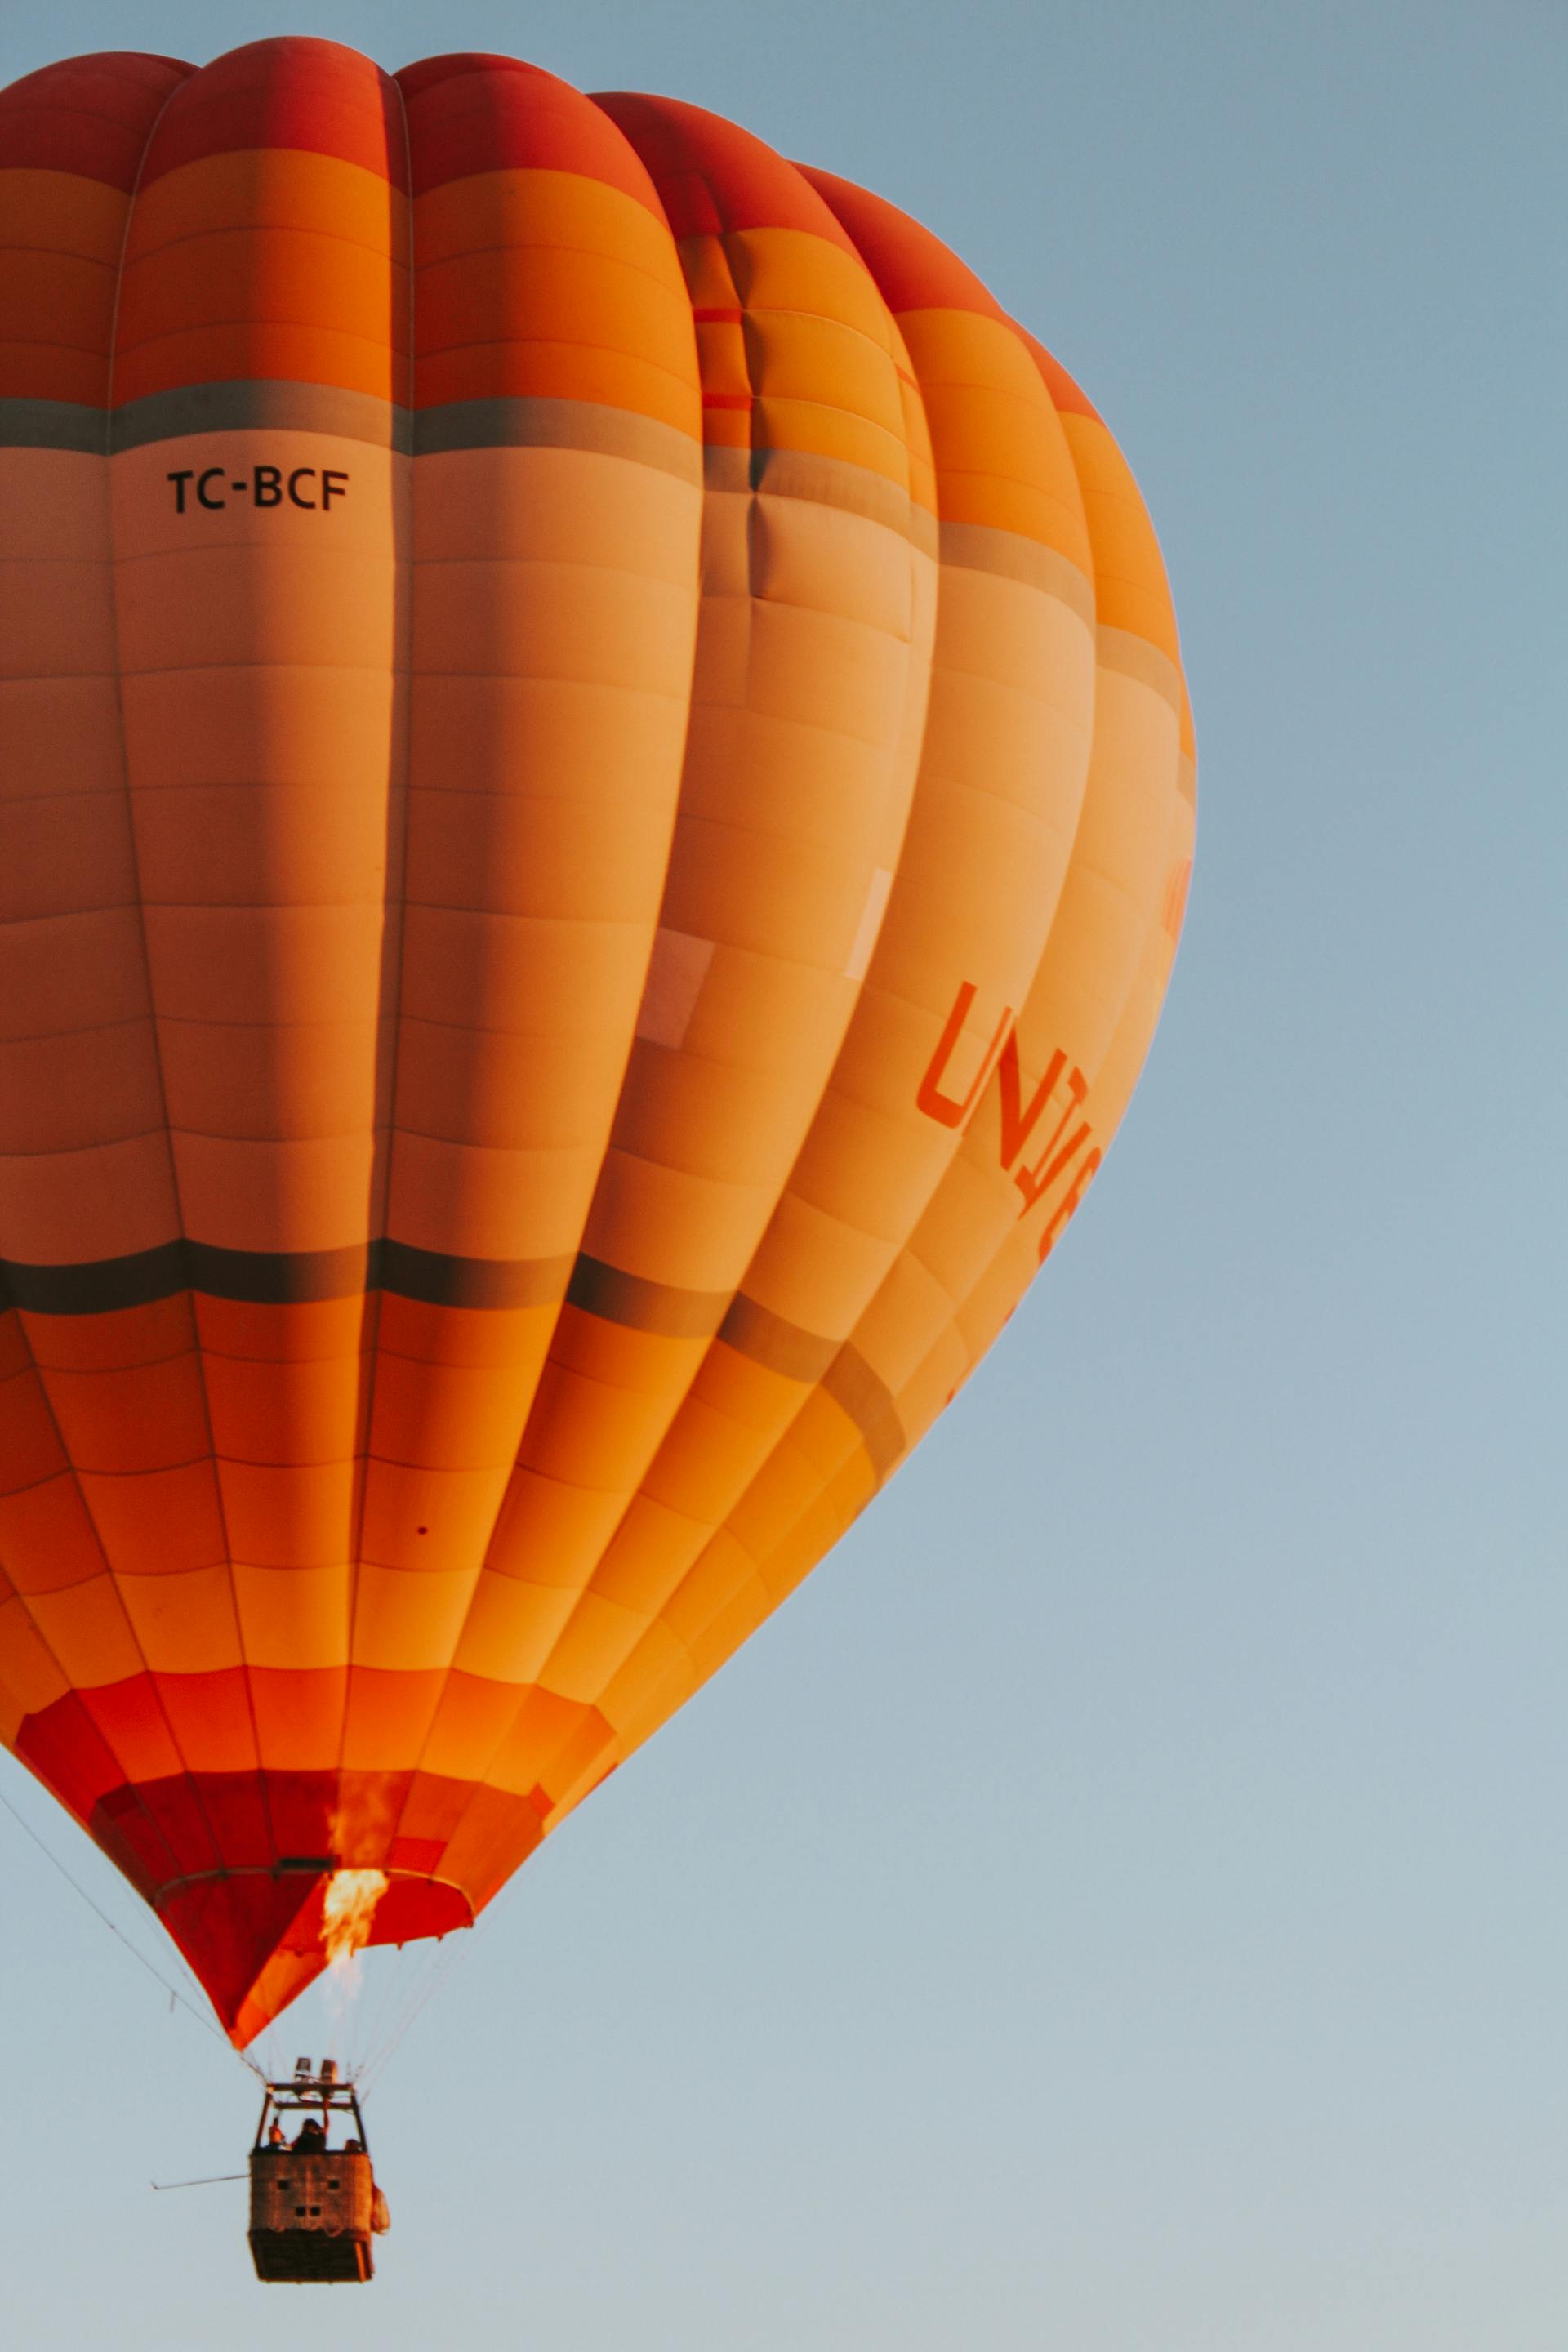 Ein orangefarbener Heißluftballon | Quelle: Pexels